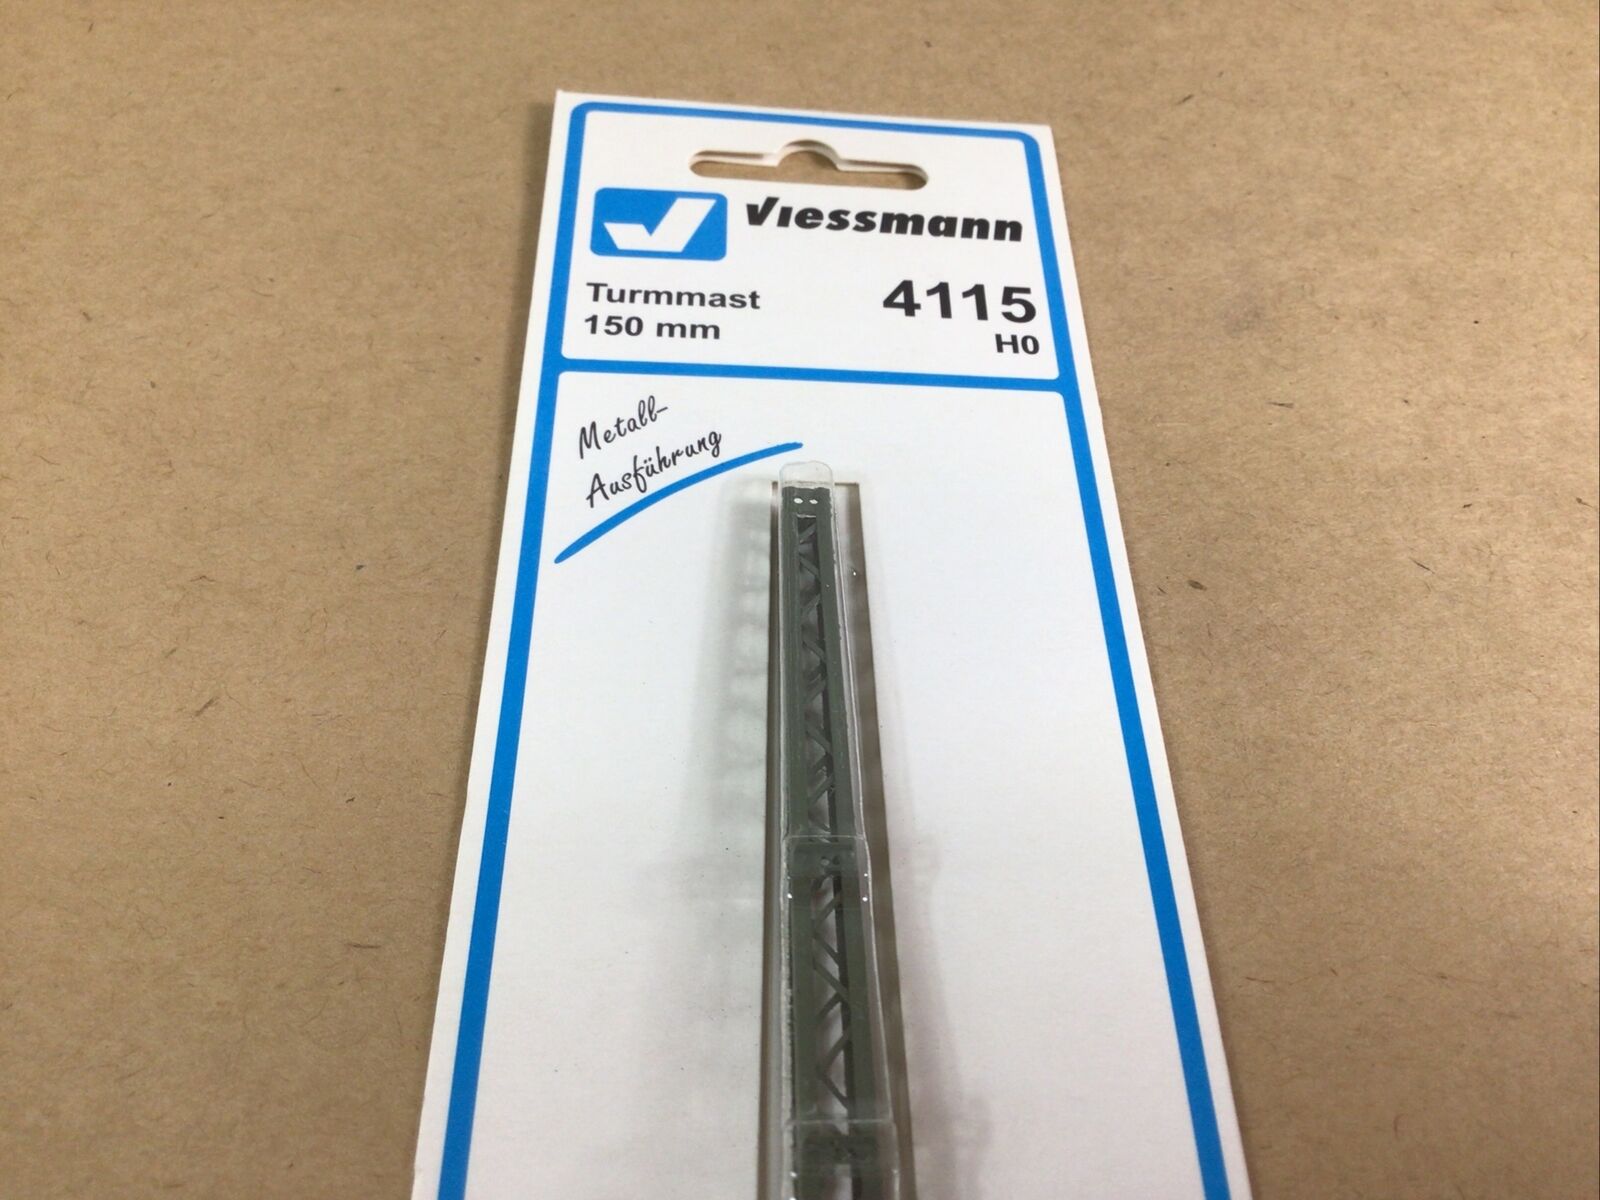 Viessmann 4115 H0 Tower mast Height  150 mm NEW IN PACKAGE Viessmann 4115 - фотография #2